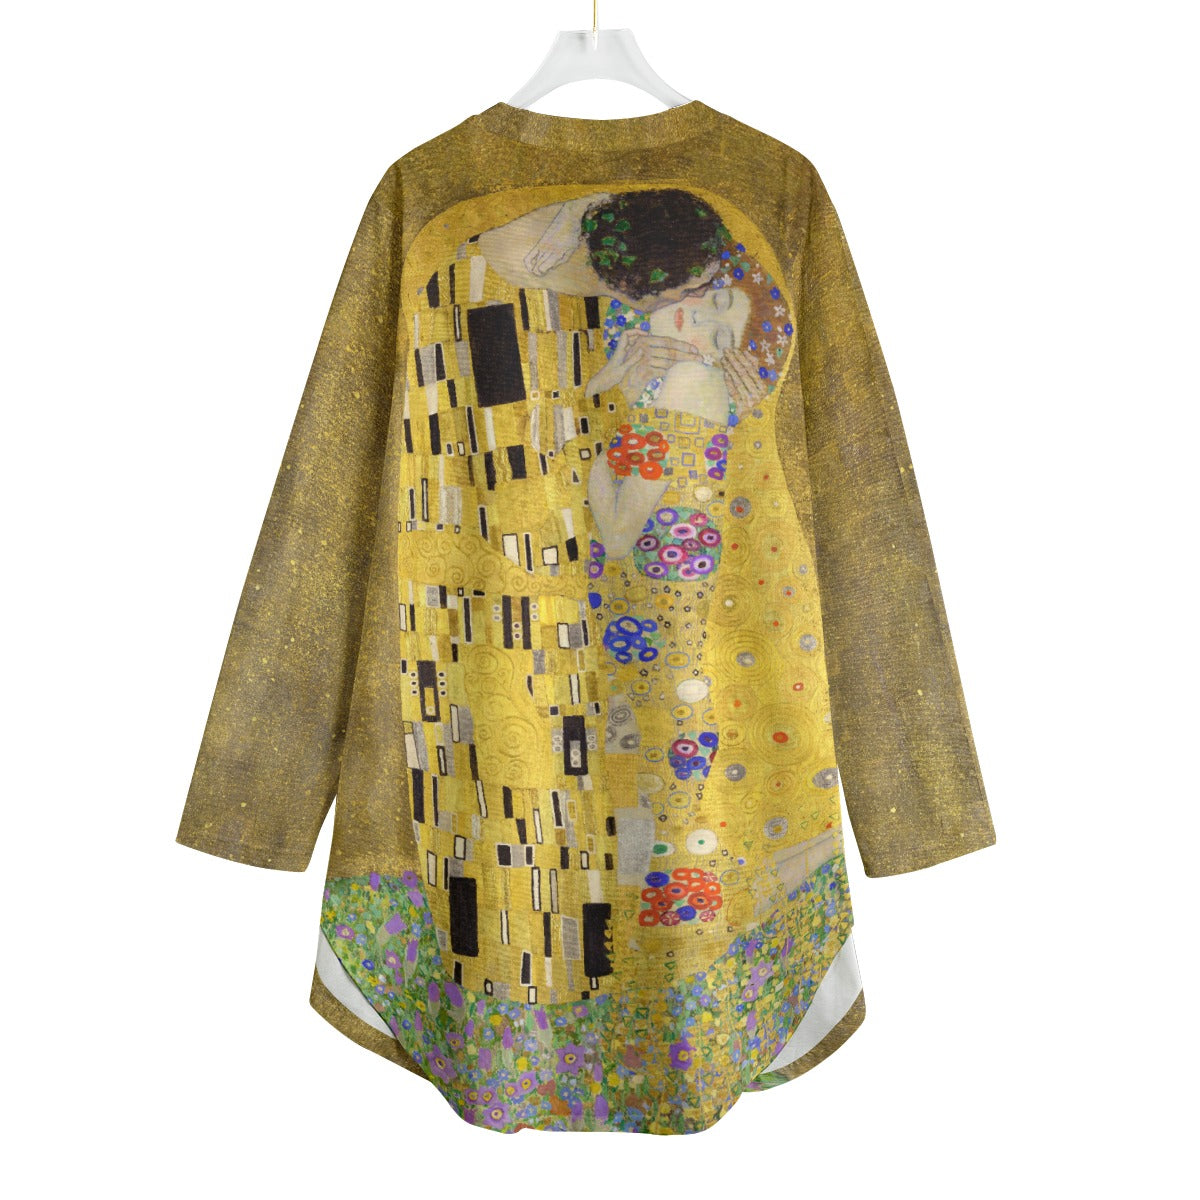 Ethereal cotton garment inspired by Gustav Klimt